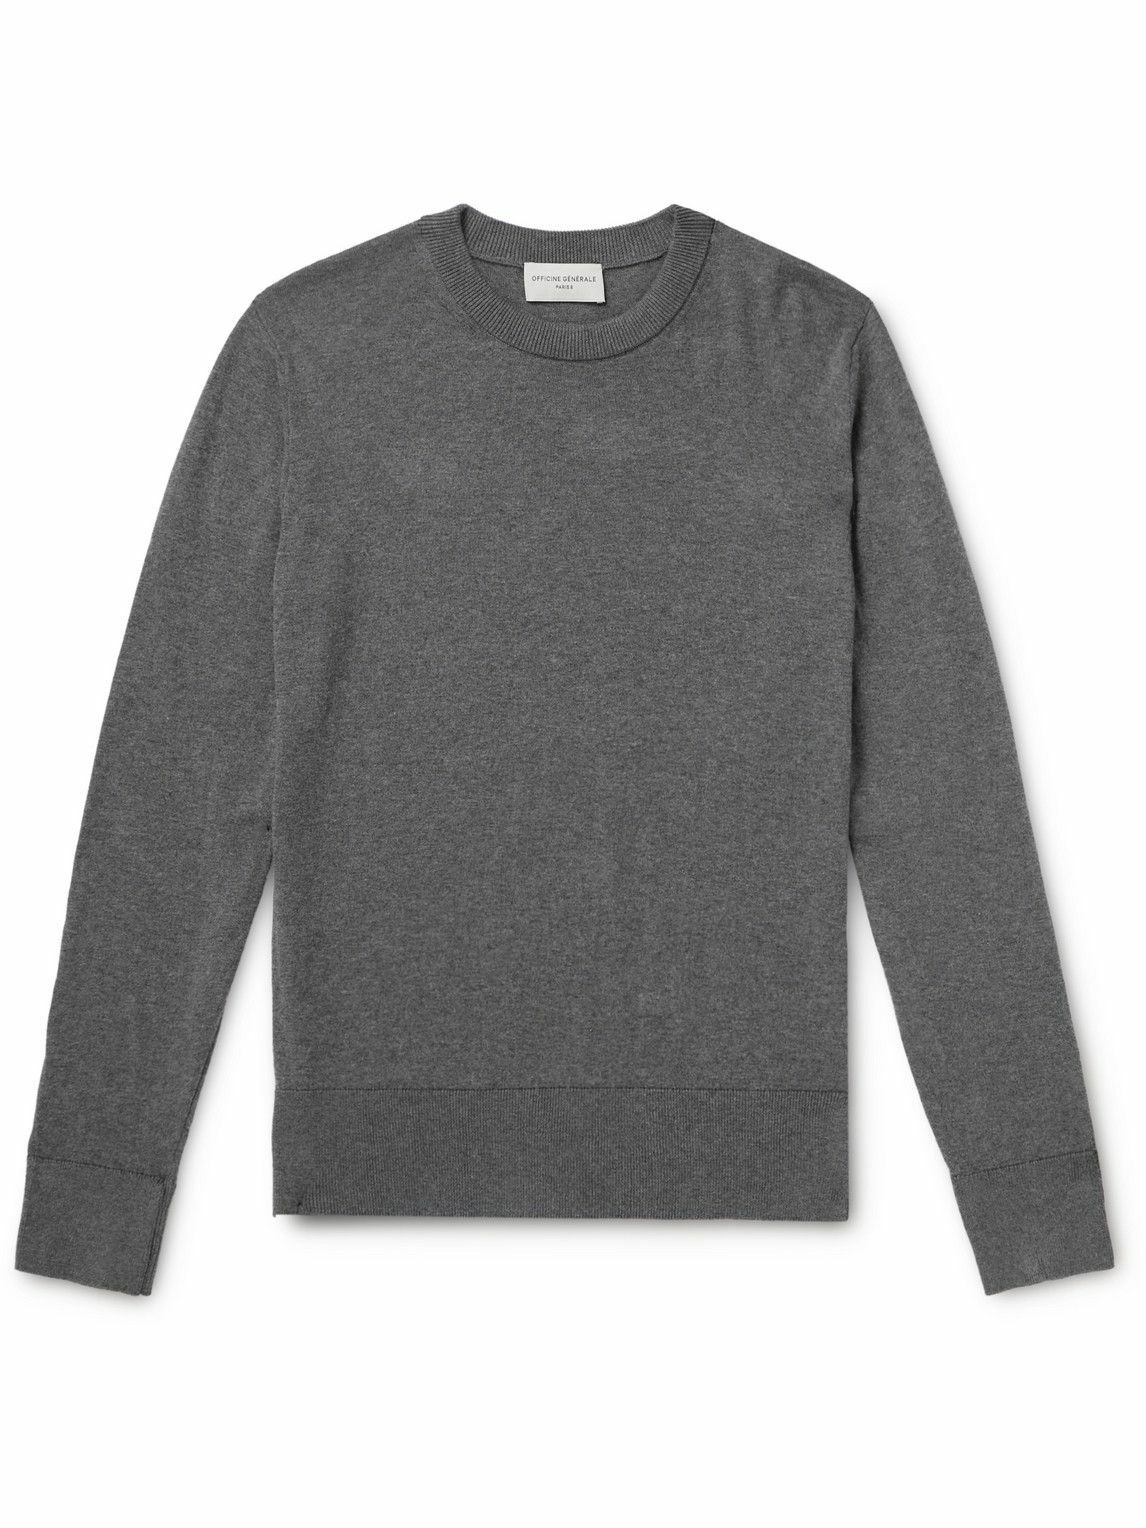 Photo: Officine Générale - Nilo Cotton Sweater - Gray